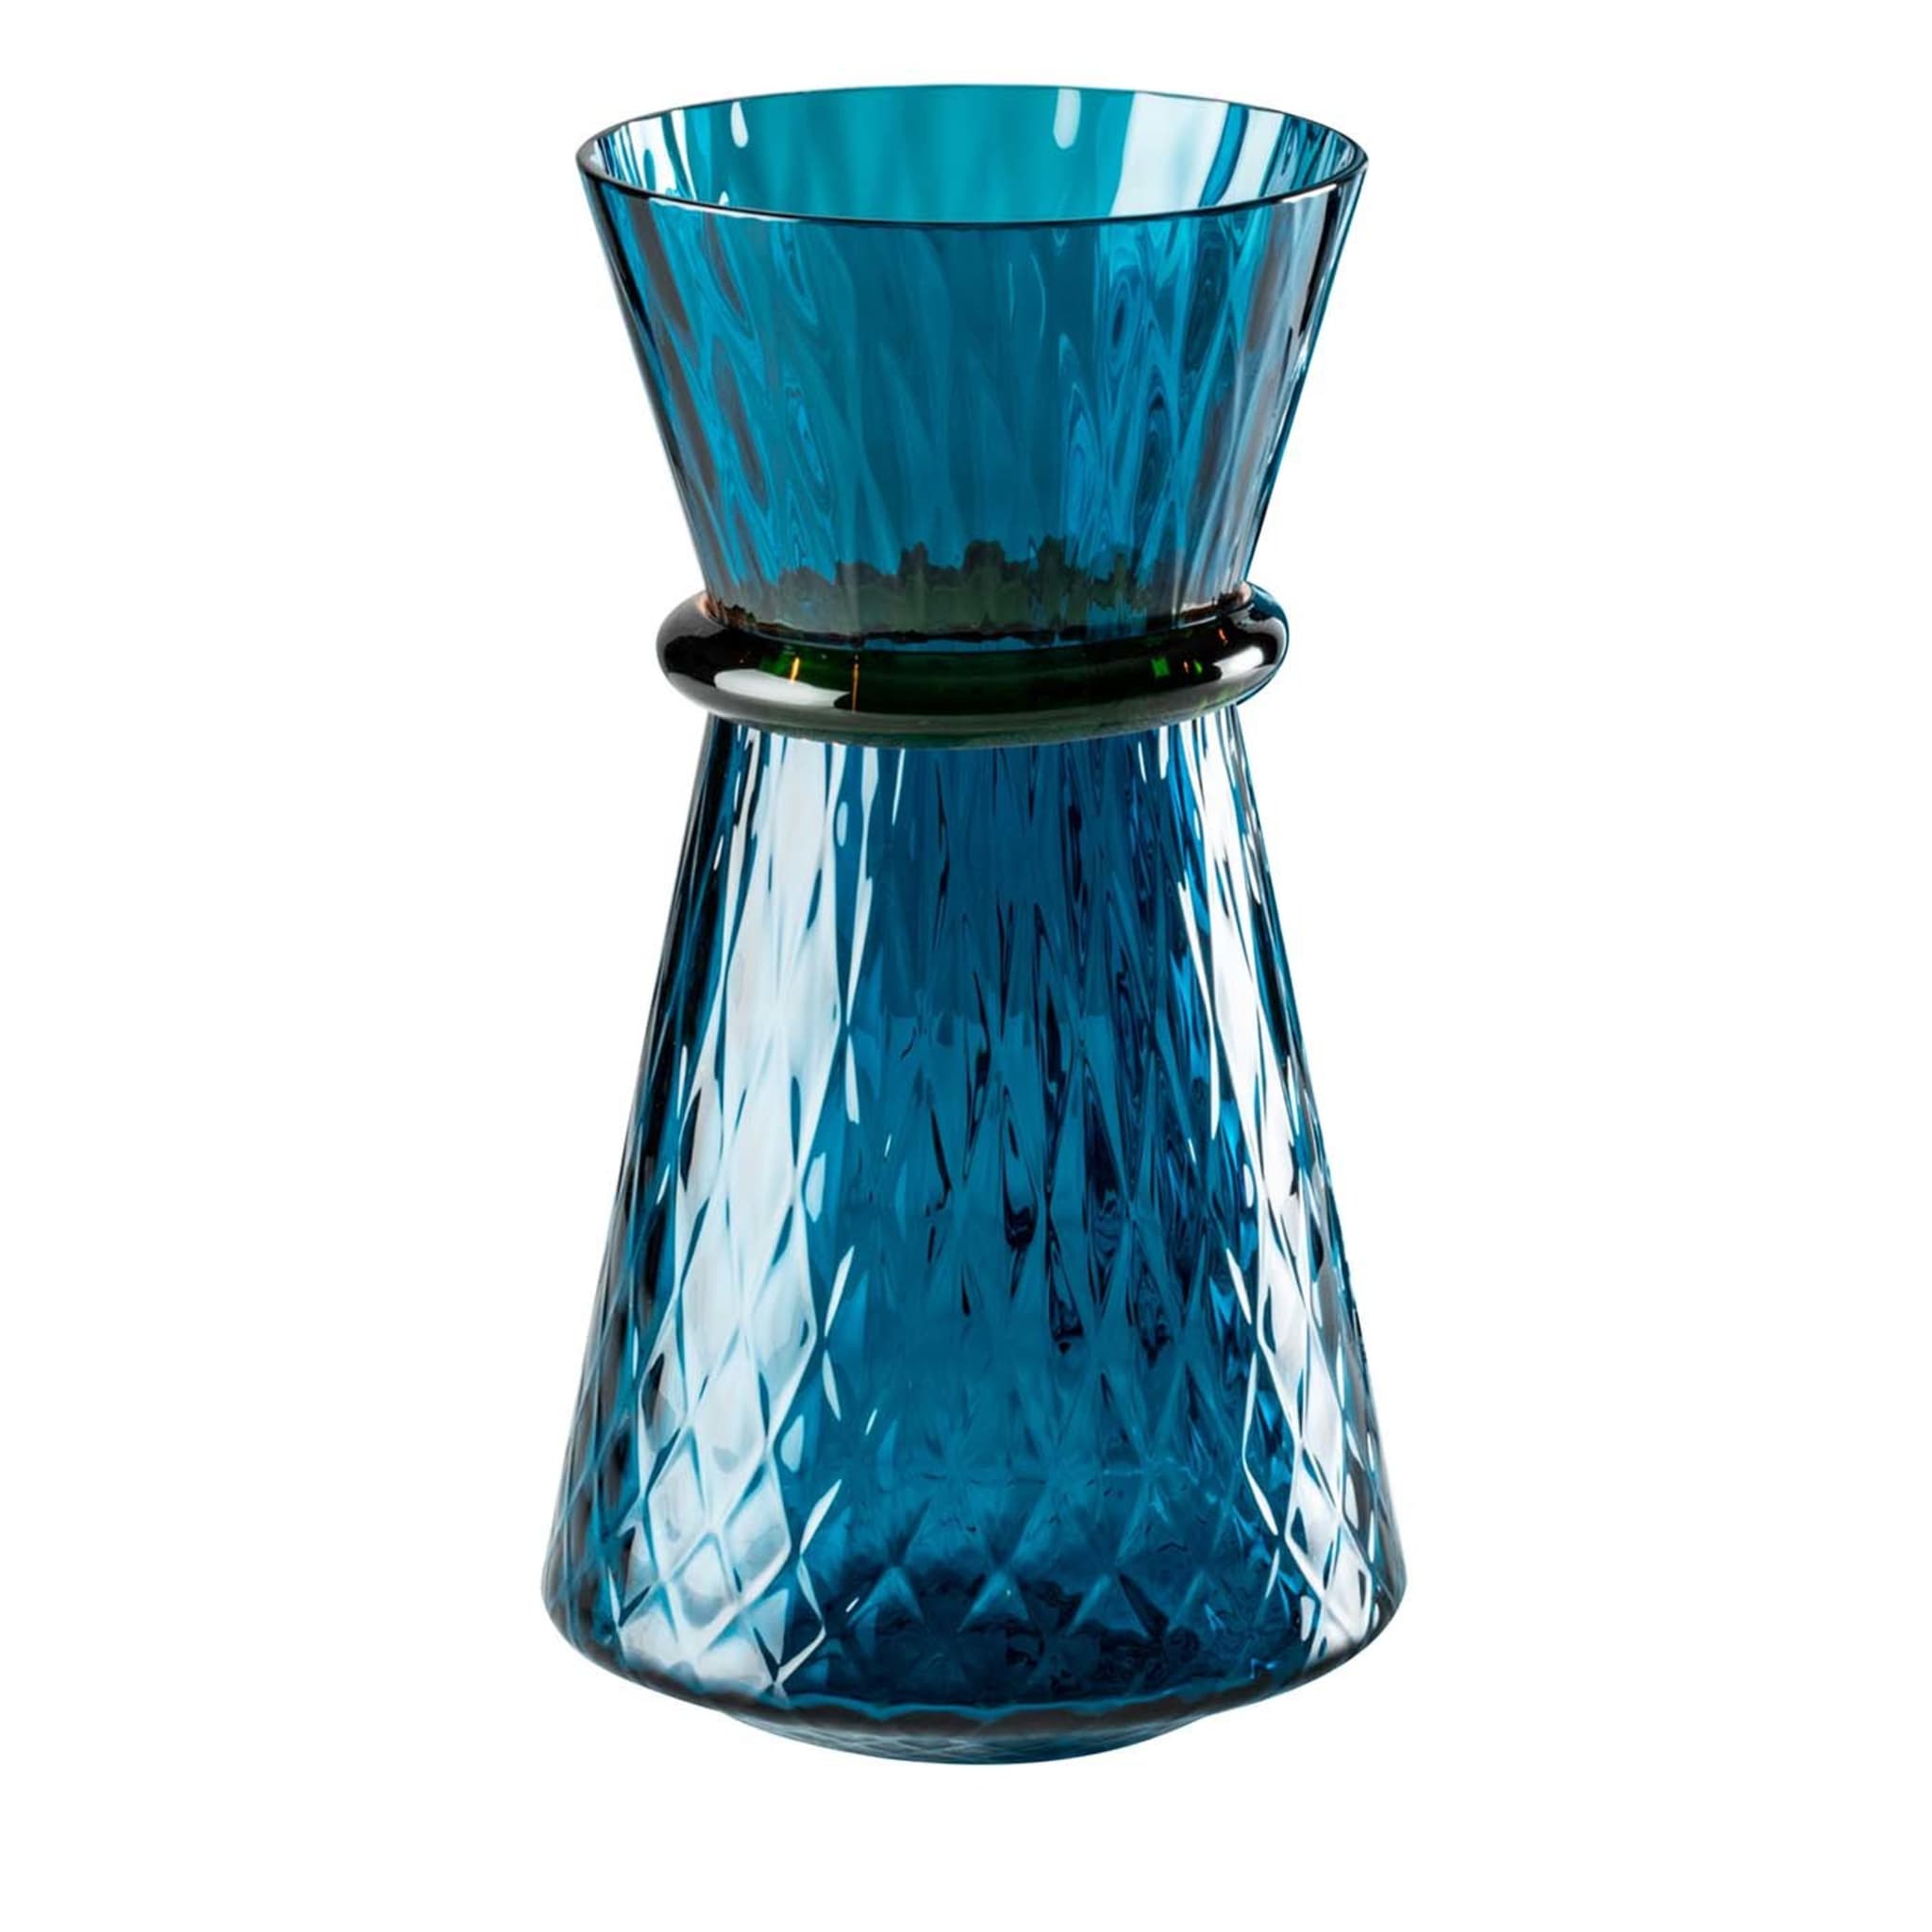 Petit vase bleu Tiara de Francesco Lucchese - Vue principale